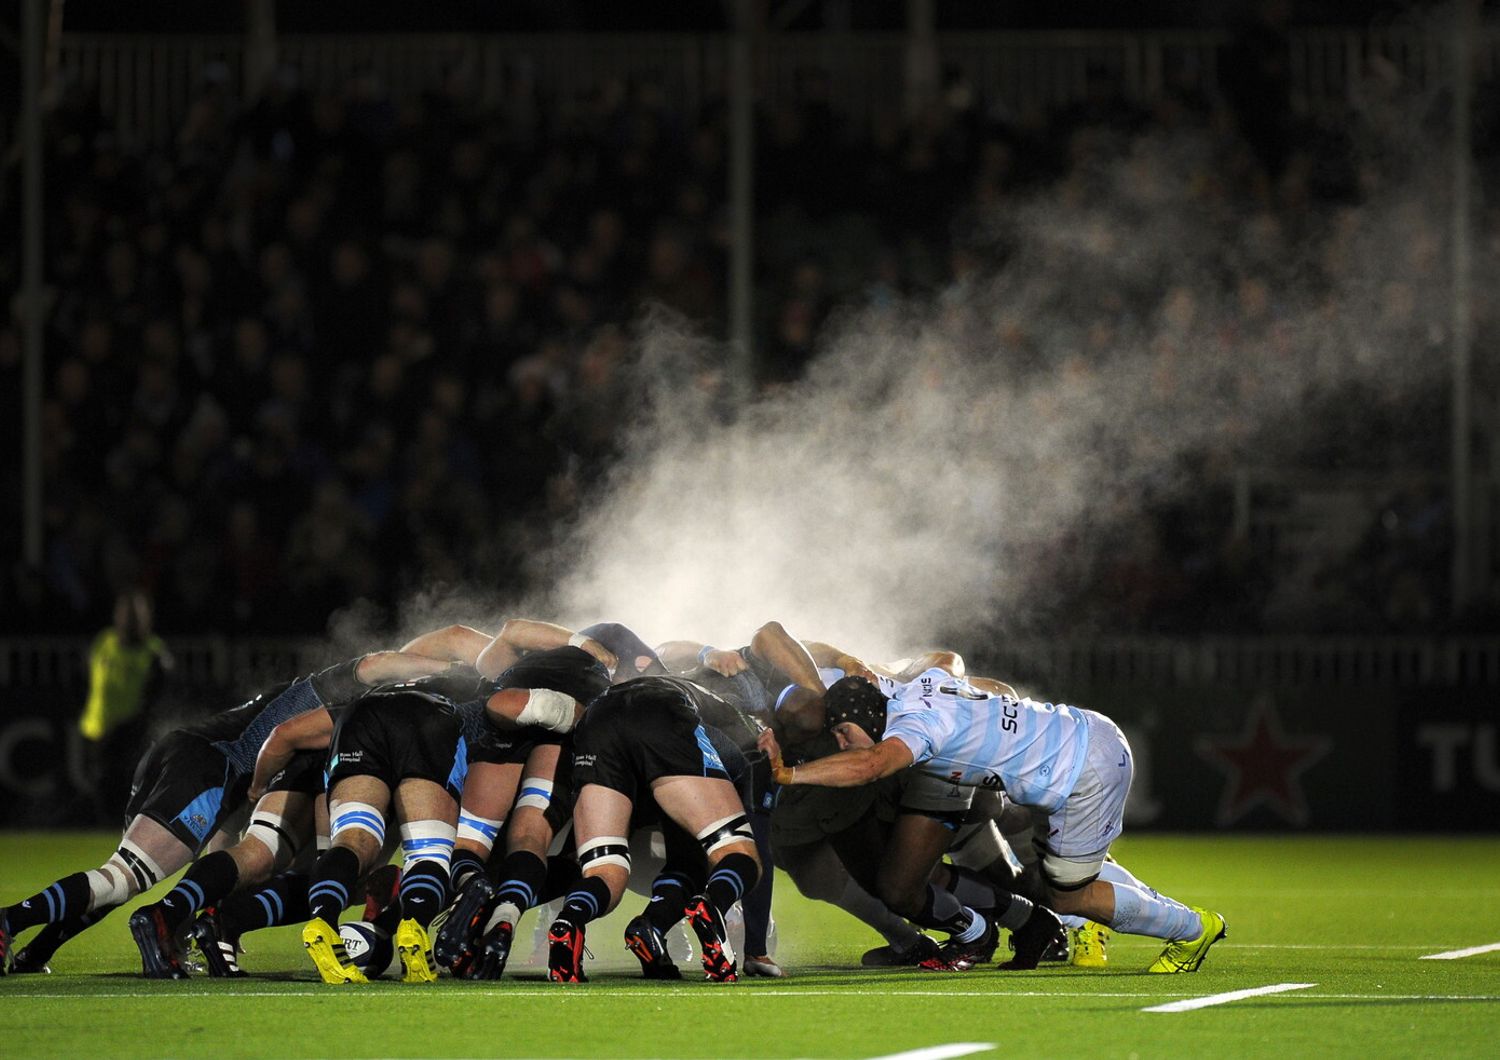 Il vapore creato dalla mischia dei giocatori di rugby durante la European Champions Cup allo Scotstoun Stadium di Glasgow, in Scozia (foto Afp)&nbsp;